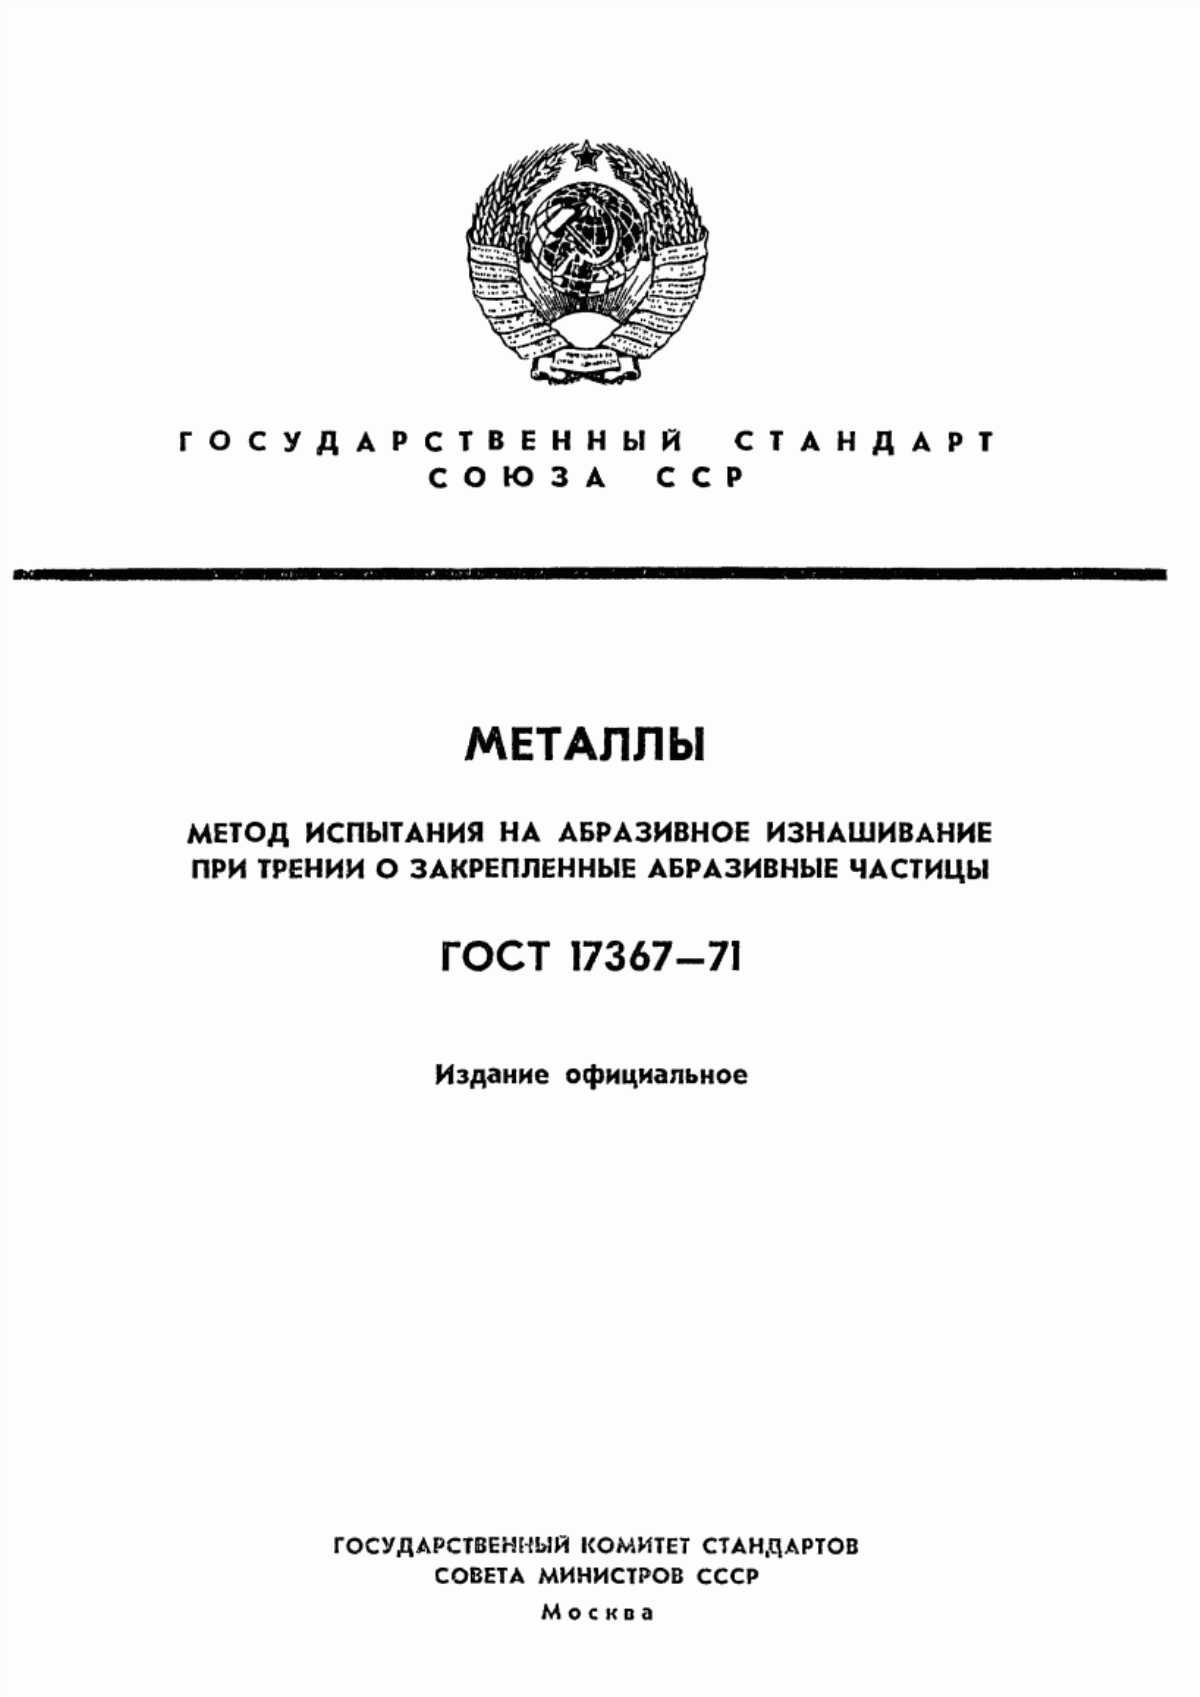 ГОСТ 17367-71 Металлы. Метод испытания на абразивное изнашивание при трении о закрепленные абразивные частицы